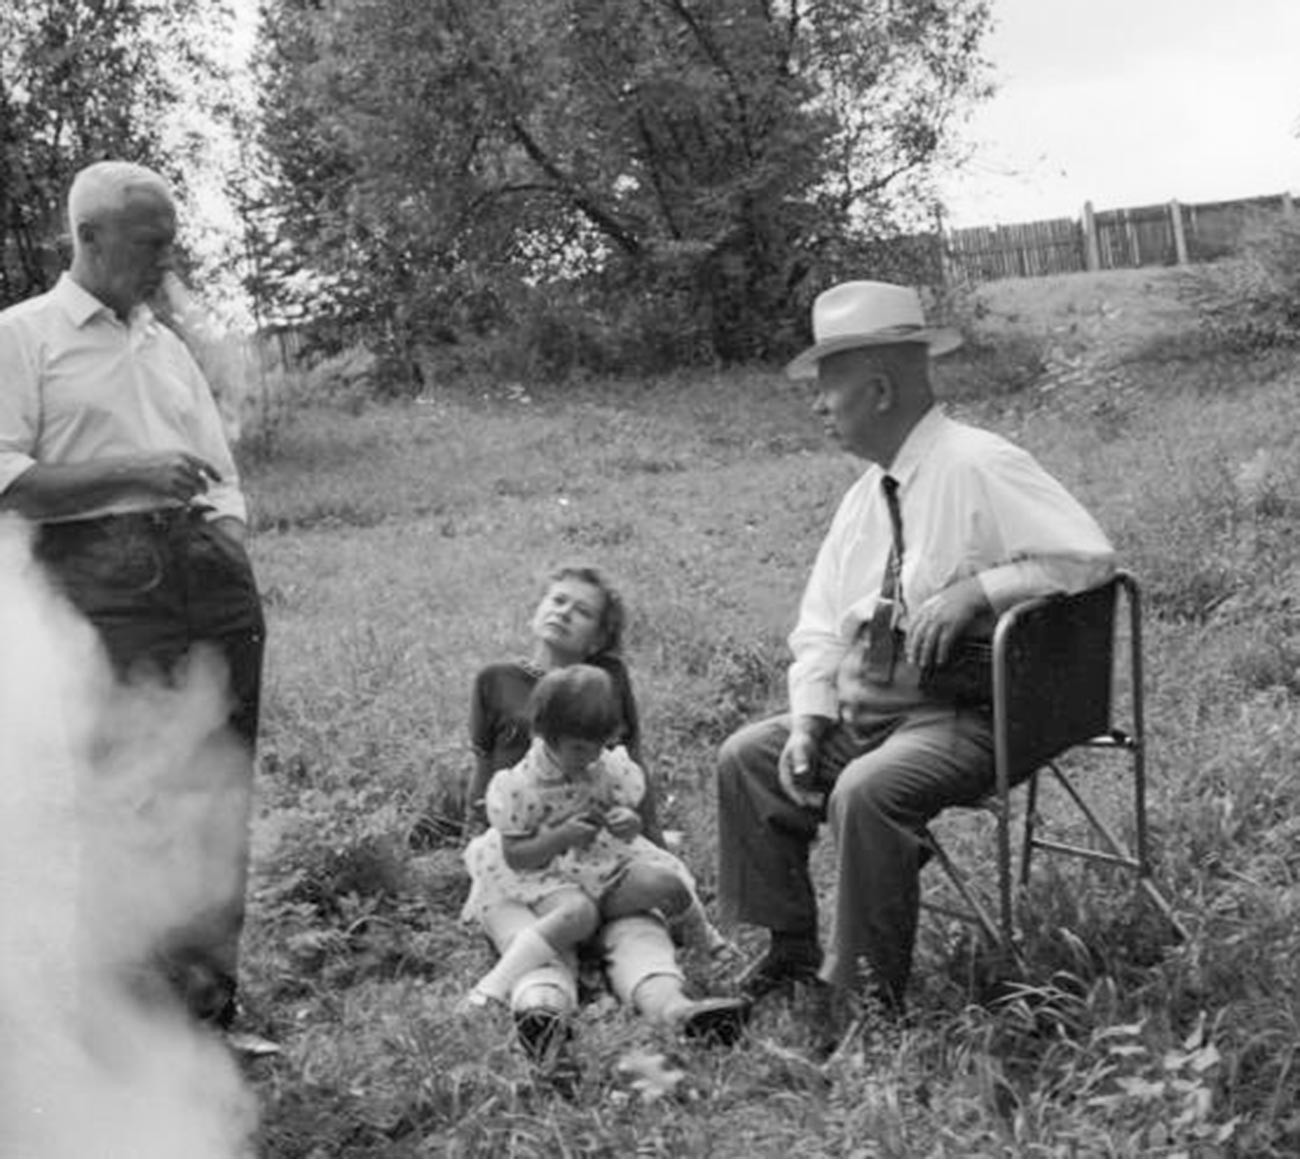 Никита Хрушчов, Роман Кармен и жена са девојчицом на ливади.